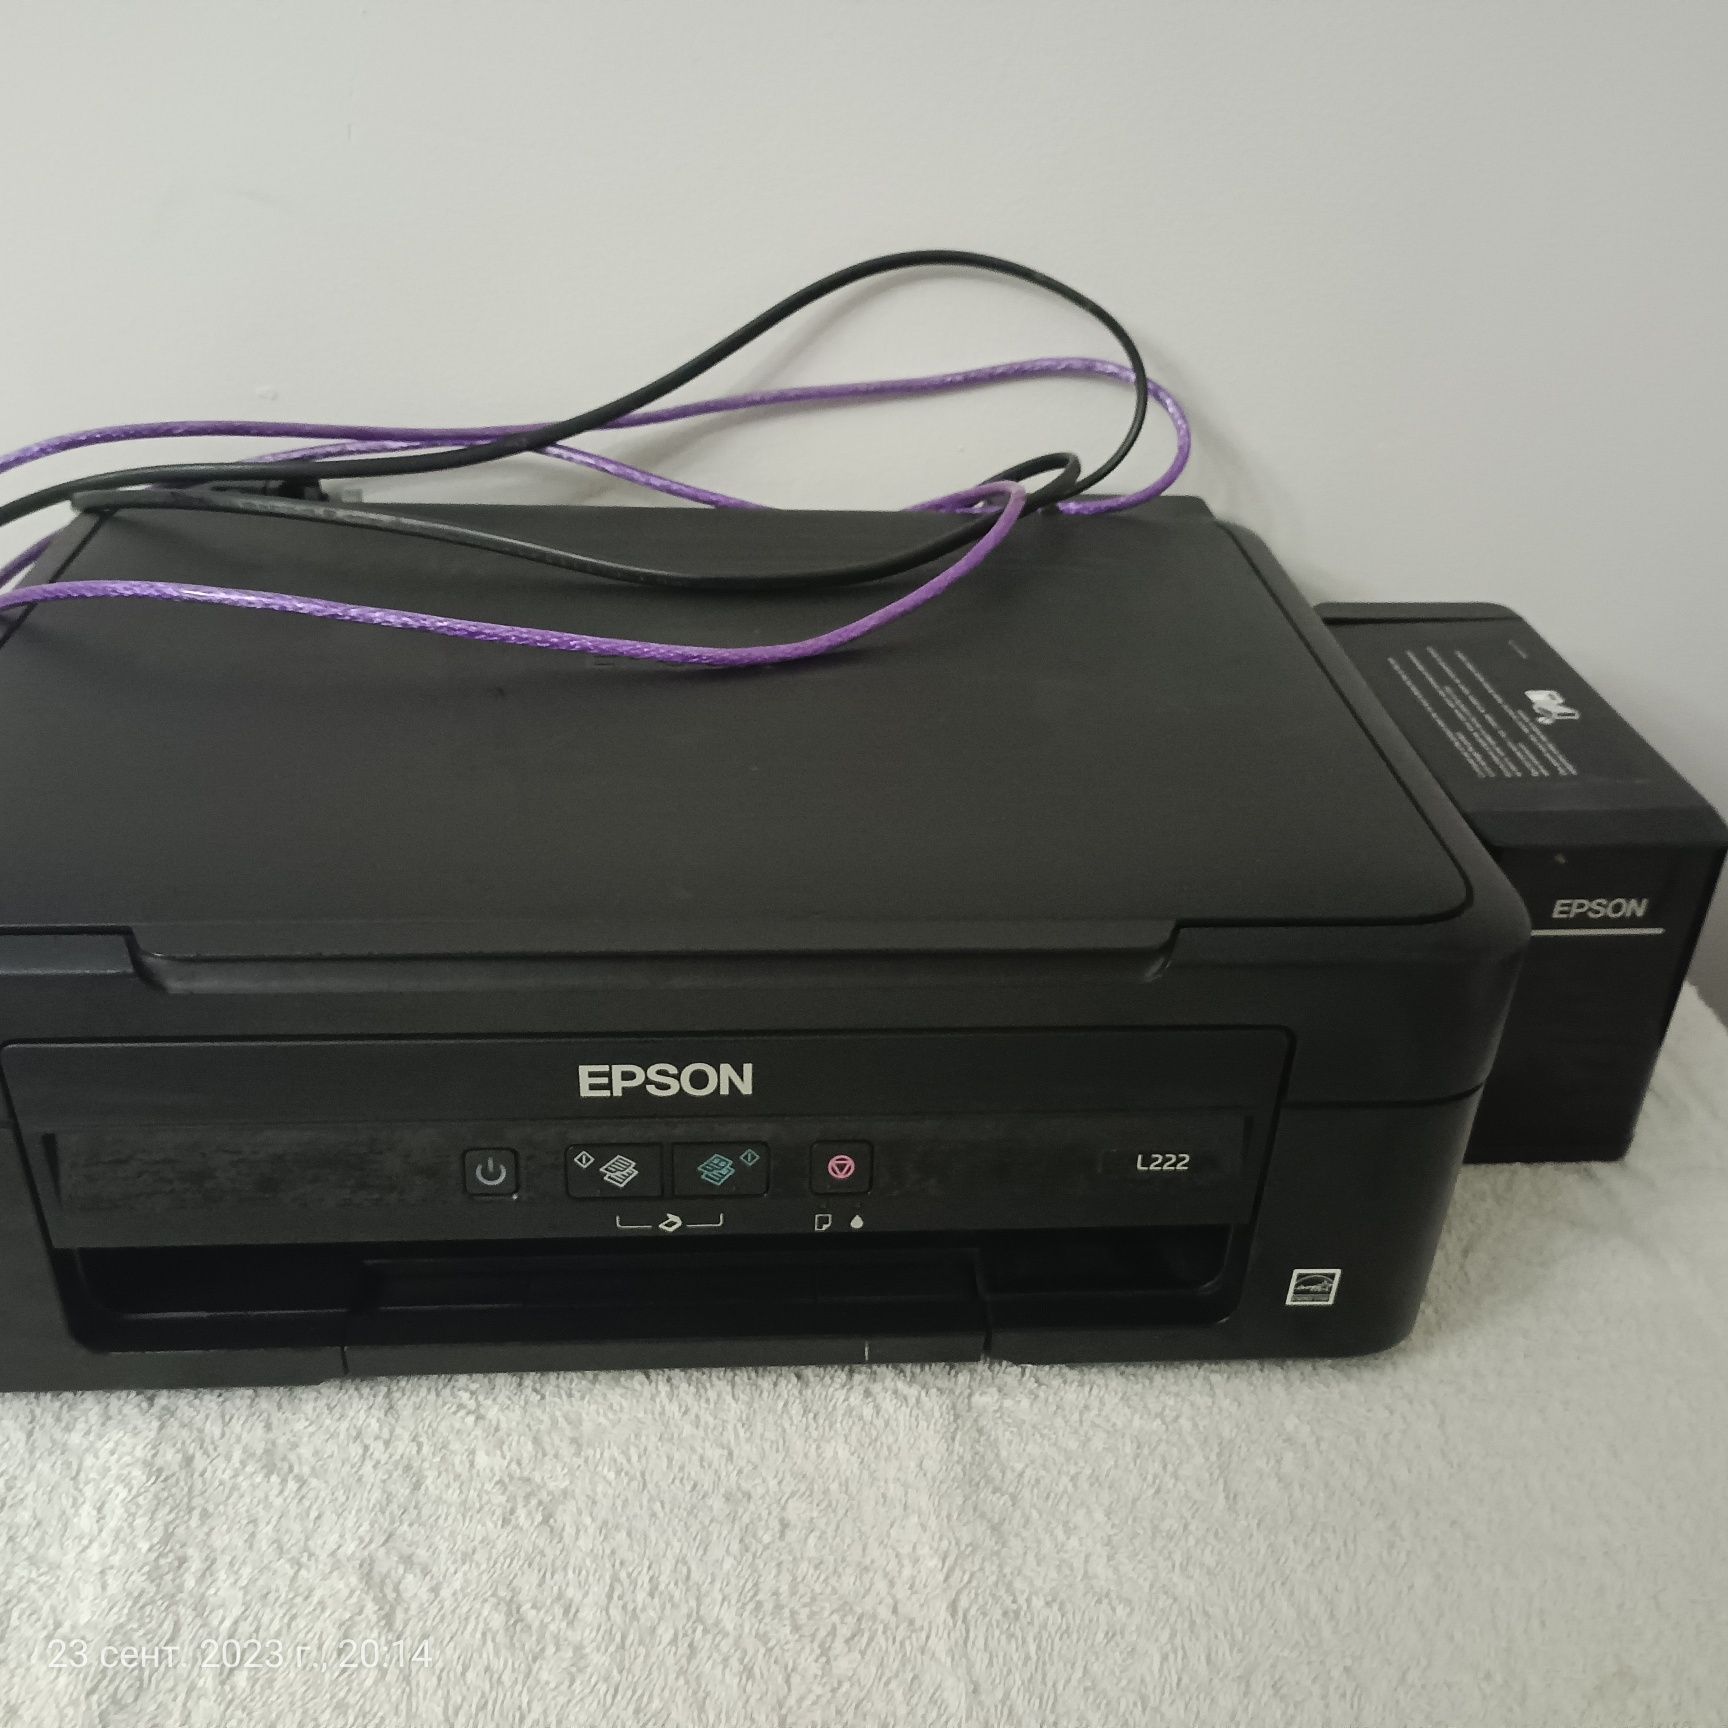 Продам принтер почти новая Epson l22. Цветная черно-белая.